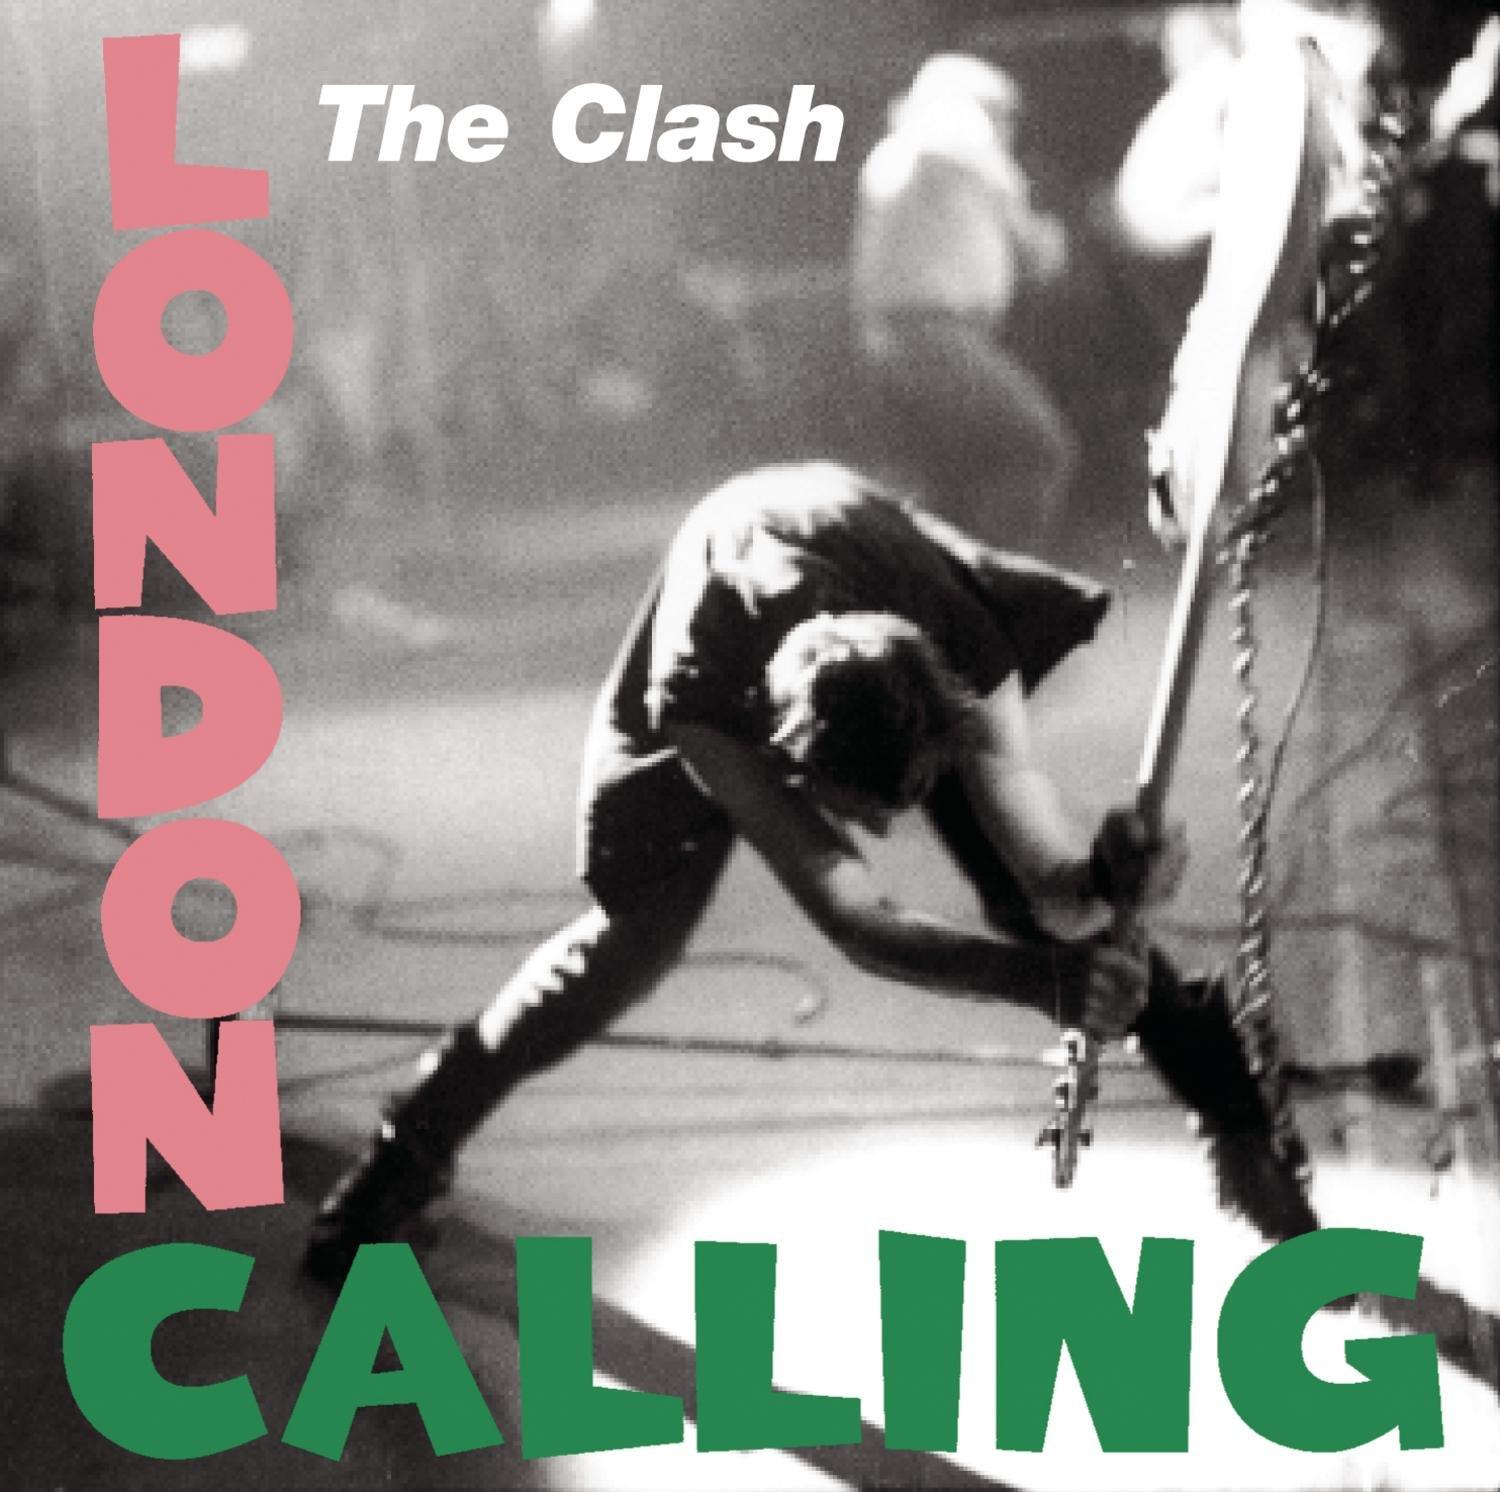 Lightning in a bottle: the album artwork for ‘London Calling’